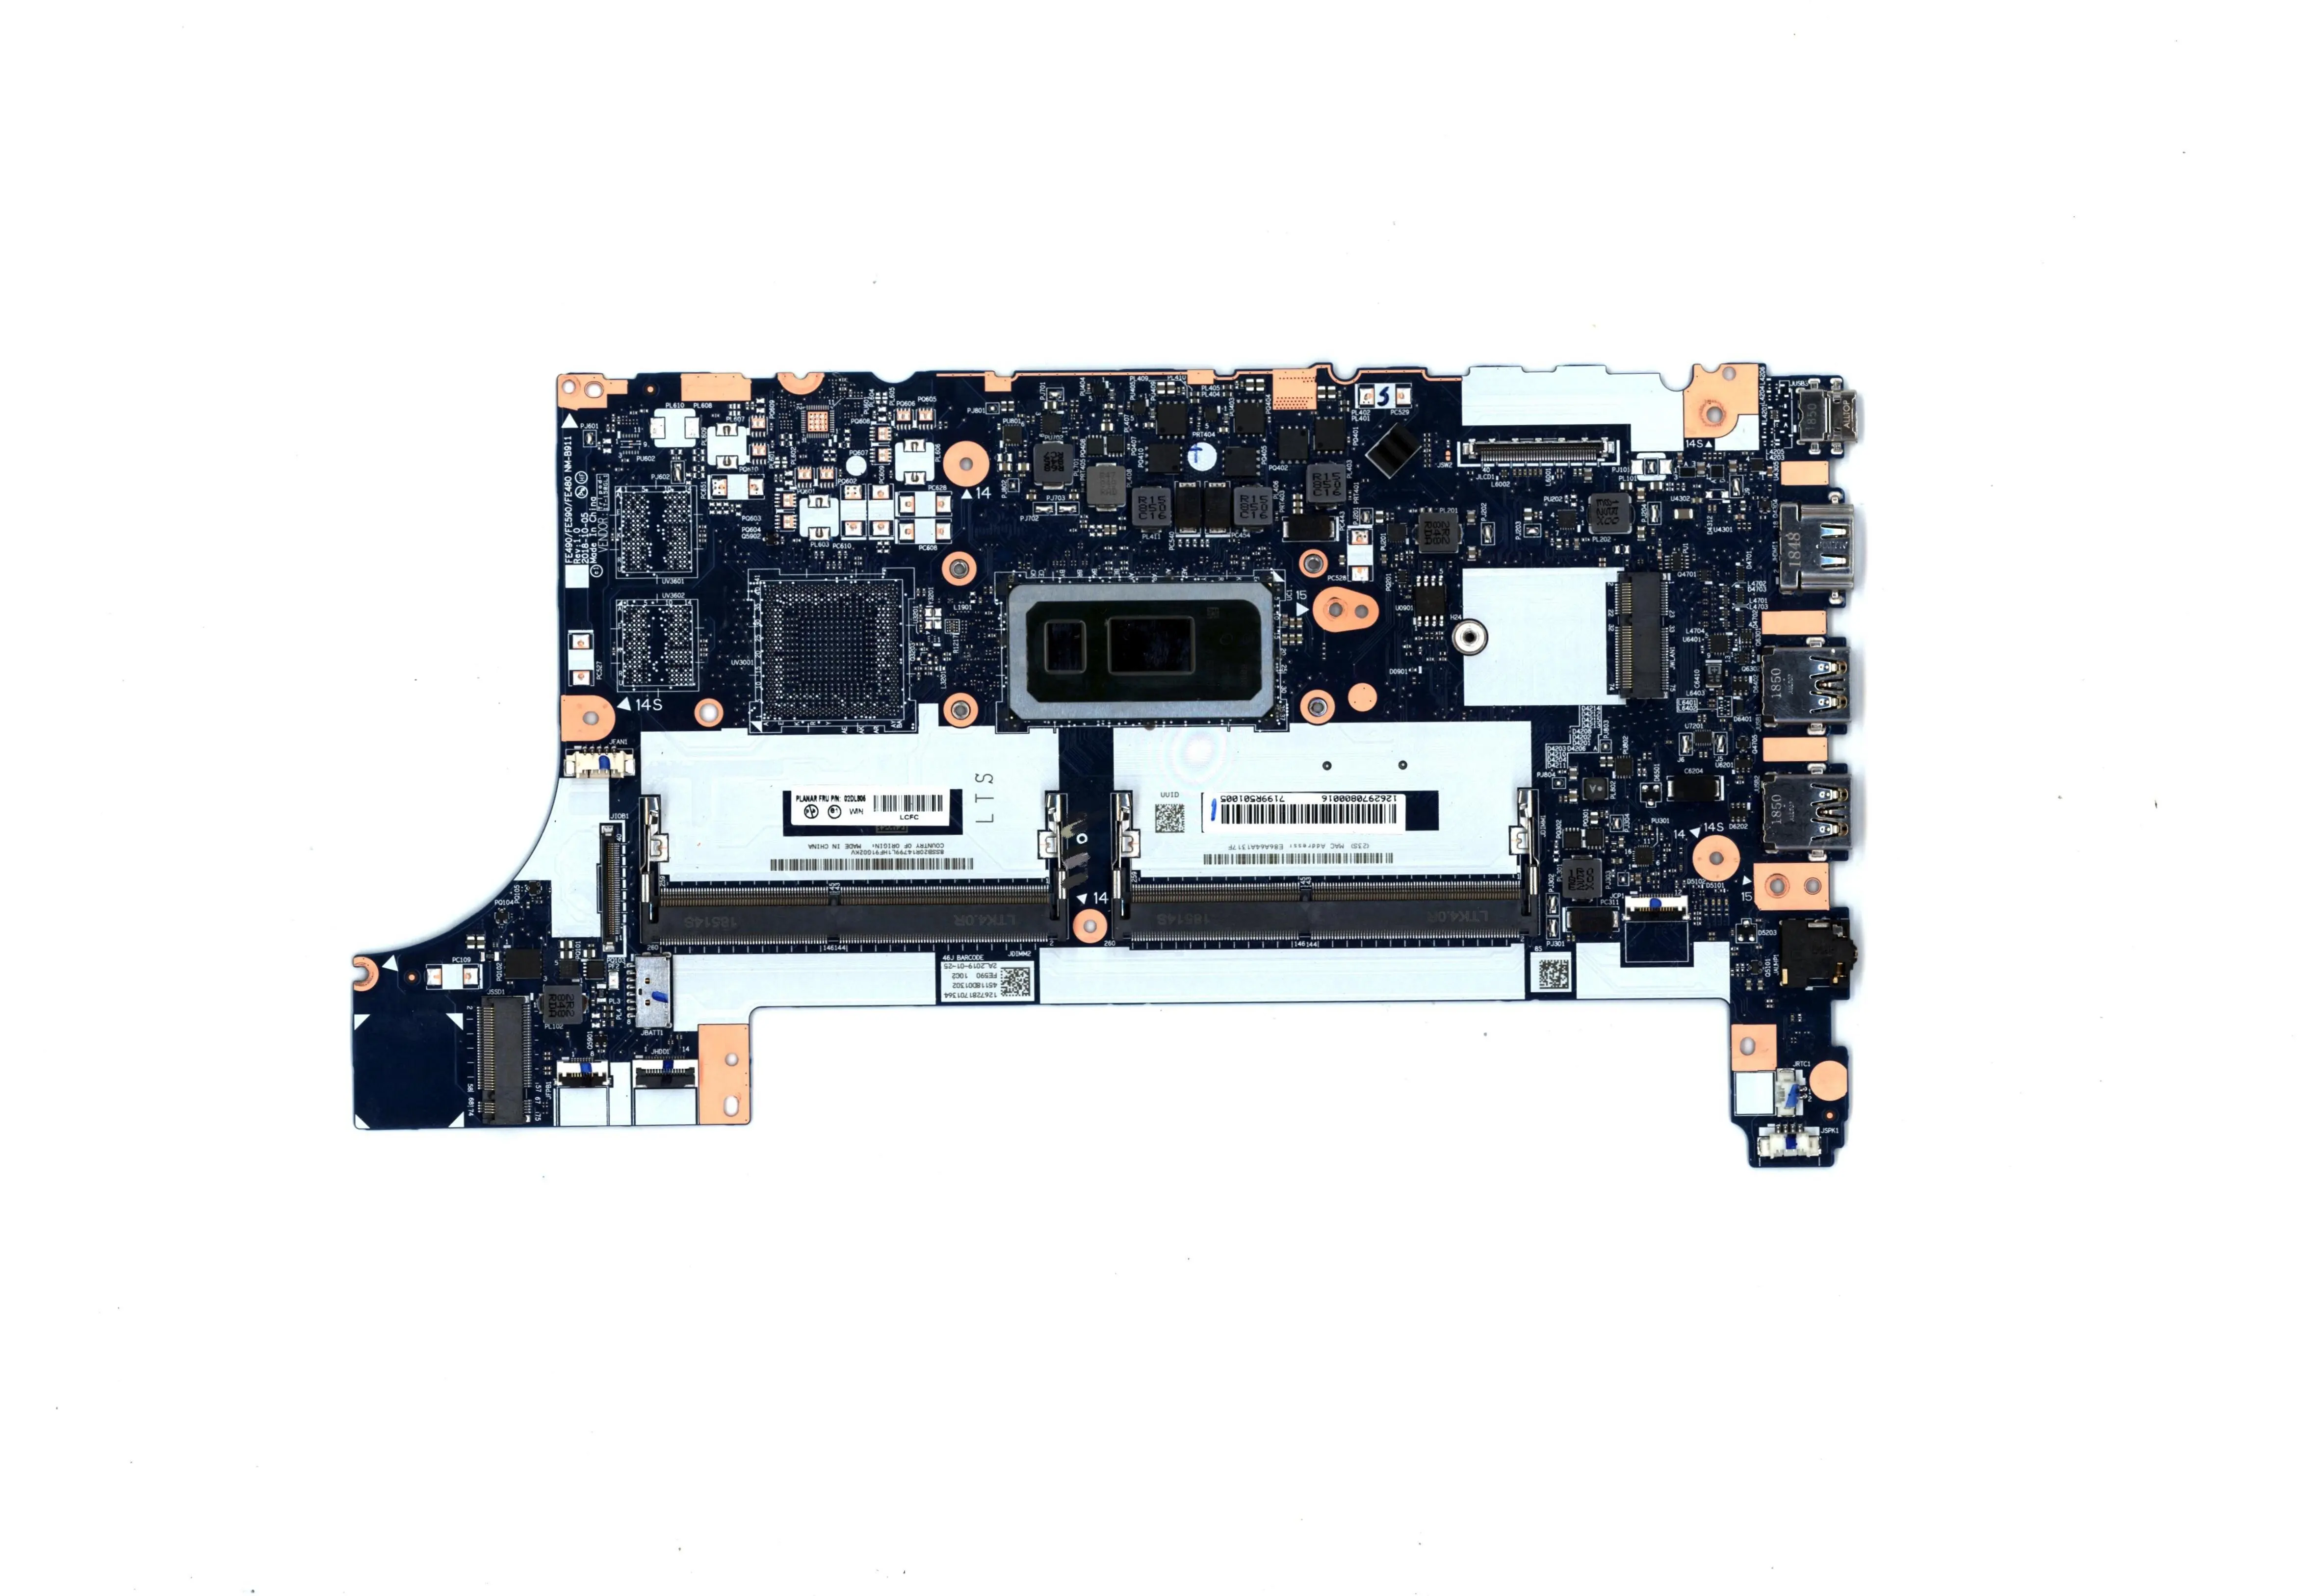 

SN NM-B911 FRU PN 5B20V81840 CPU i5-8265U UMA IUHDG модель, многофункциональная запасная материнская плата для ноутбука E490 E590 ThinkPad